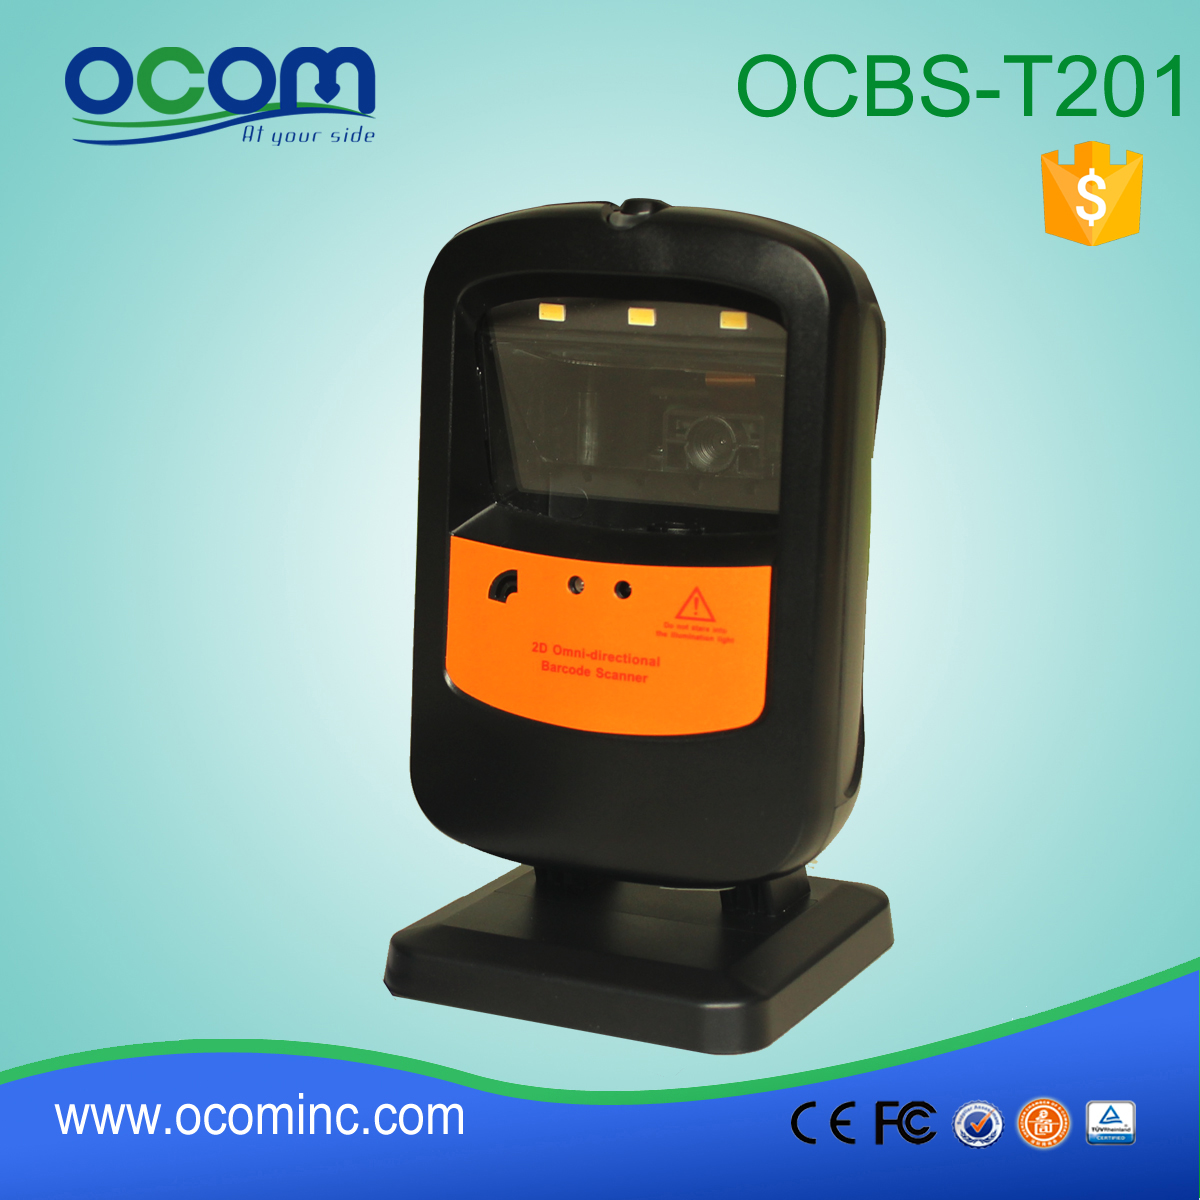 OCBS-T201: ريال قطري آلة ماسحة الباركود، الماسح الضوئي الباركود جبل ثابت